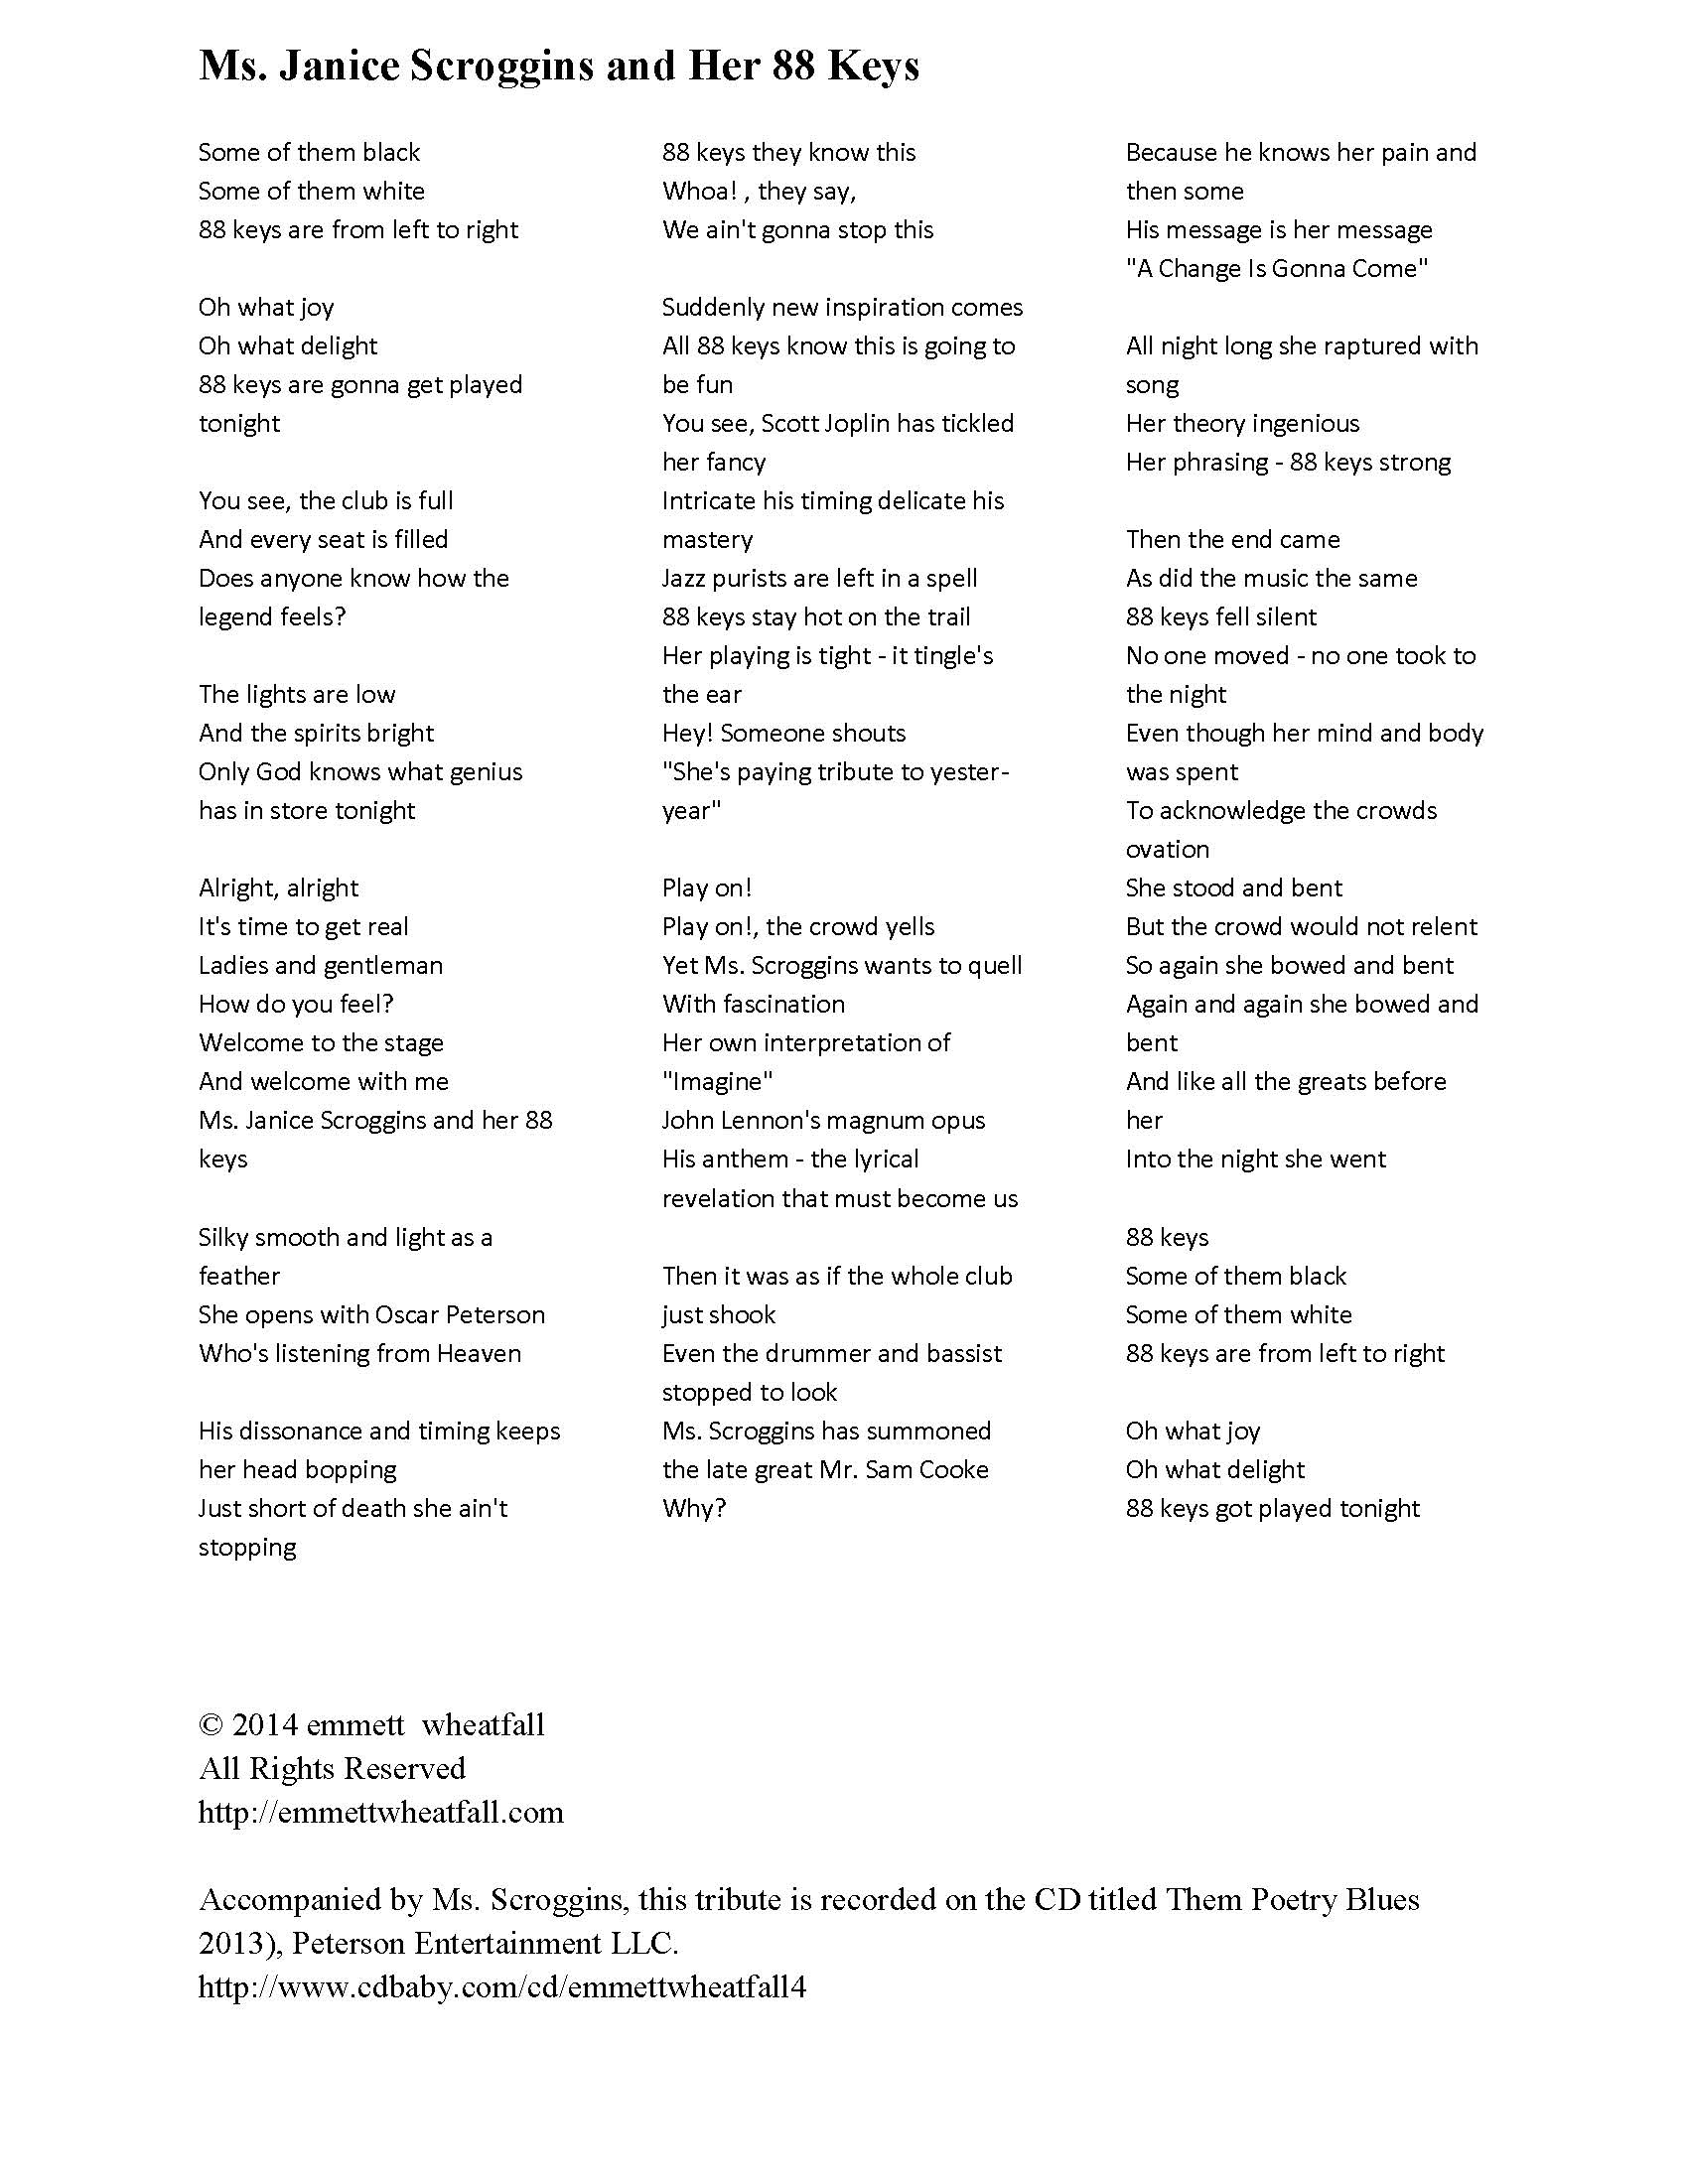 Emmett Wheatfall poem for Janice